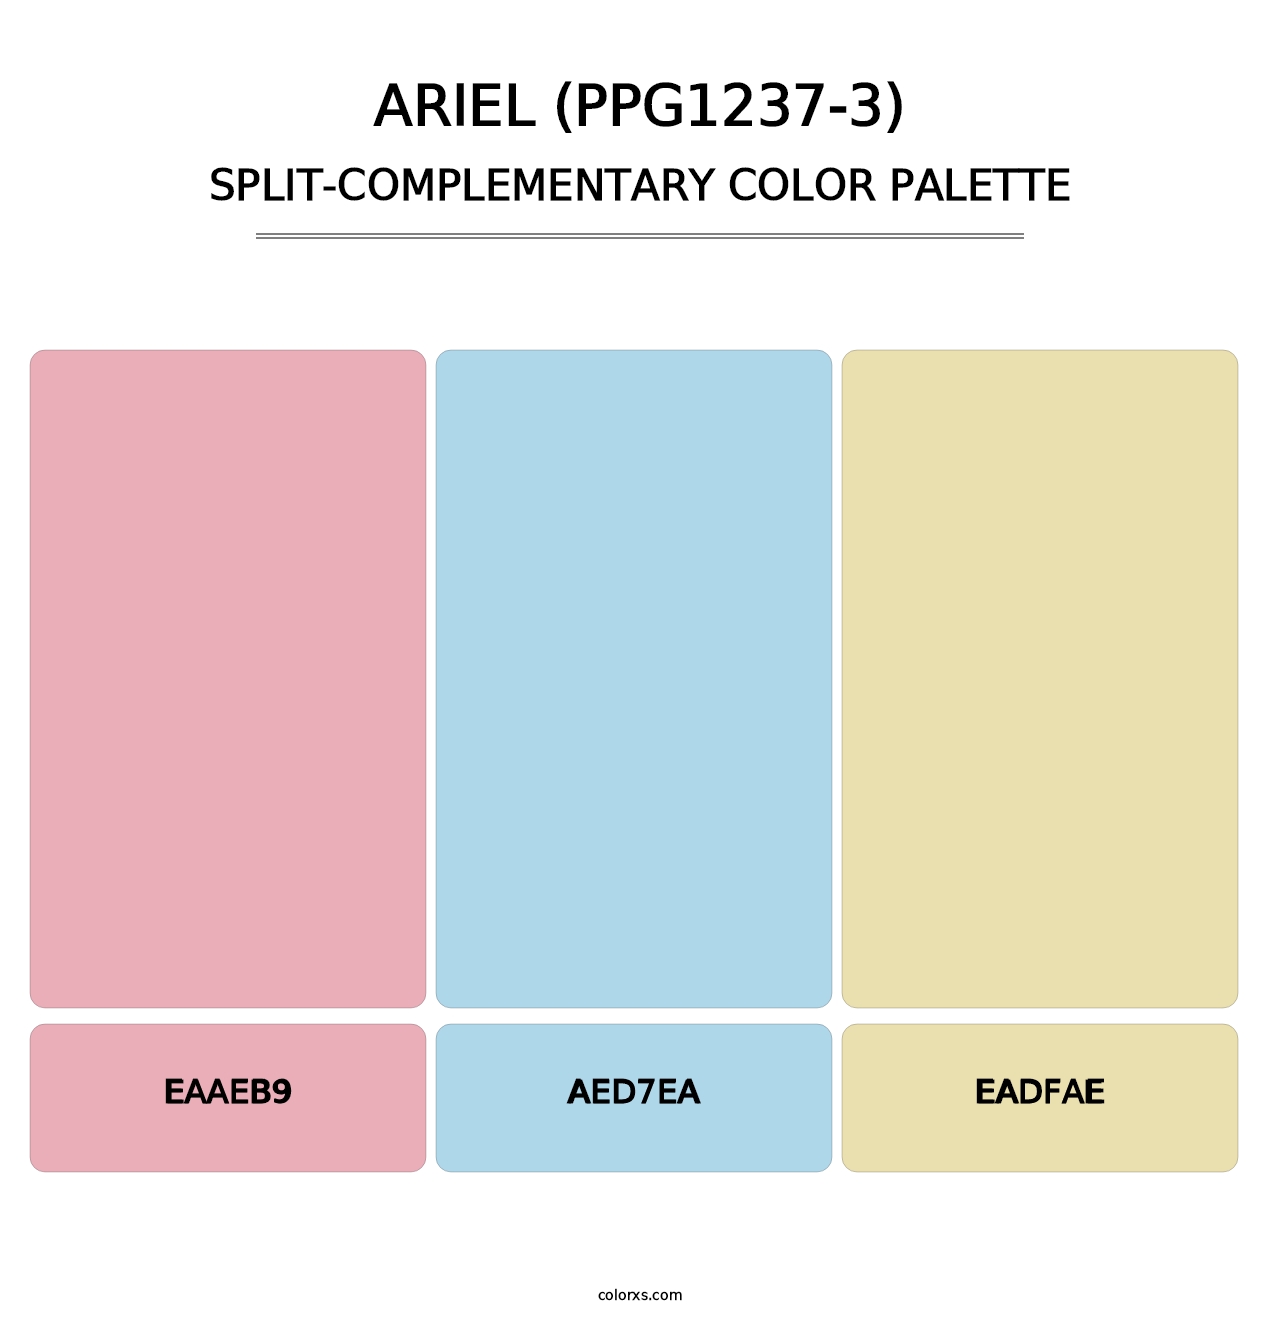 Ariel (PPG1237-3) - Split-Complementary Color Palette